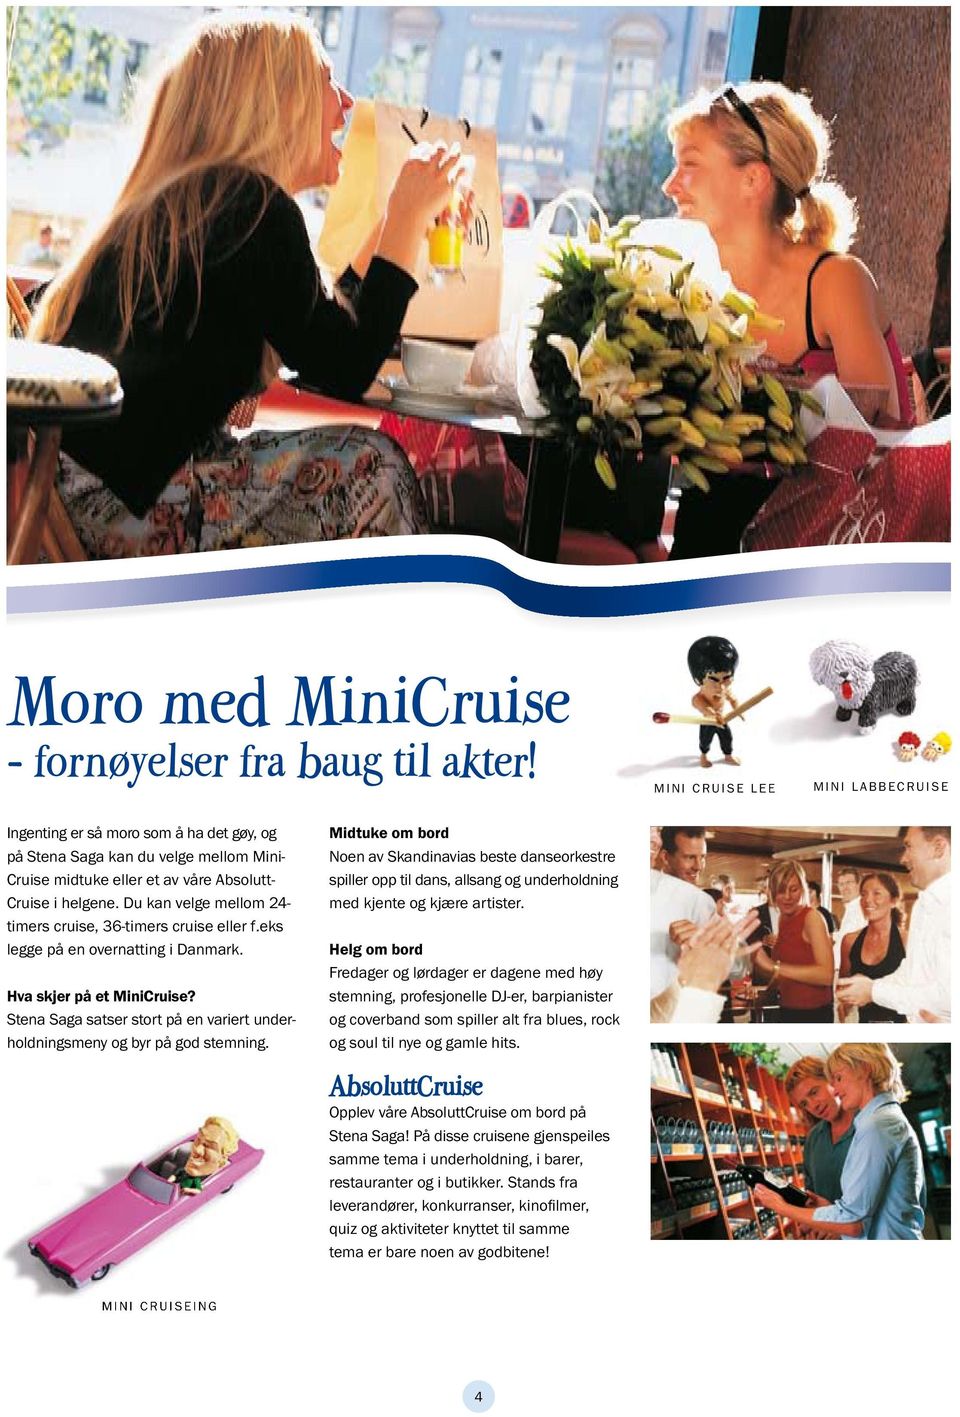 Du kan velge mellom 24- timers cruise, 36-timers cruise eller f.eks legge på en overnatting i Danmark. hva skjer på et MiniCruise?